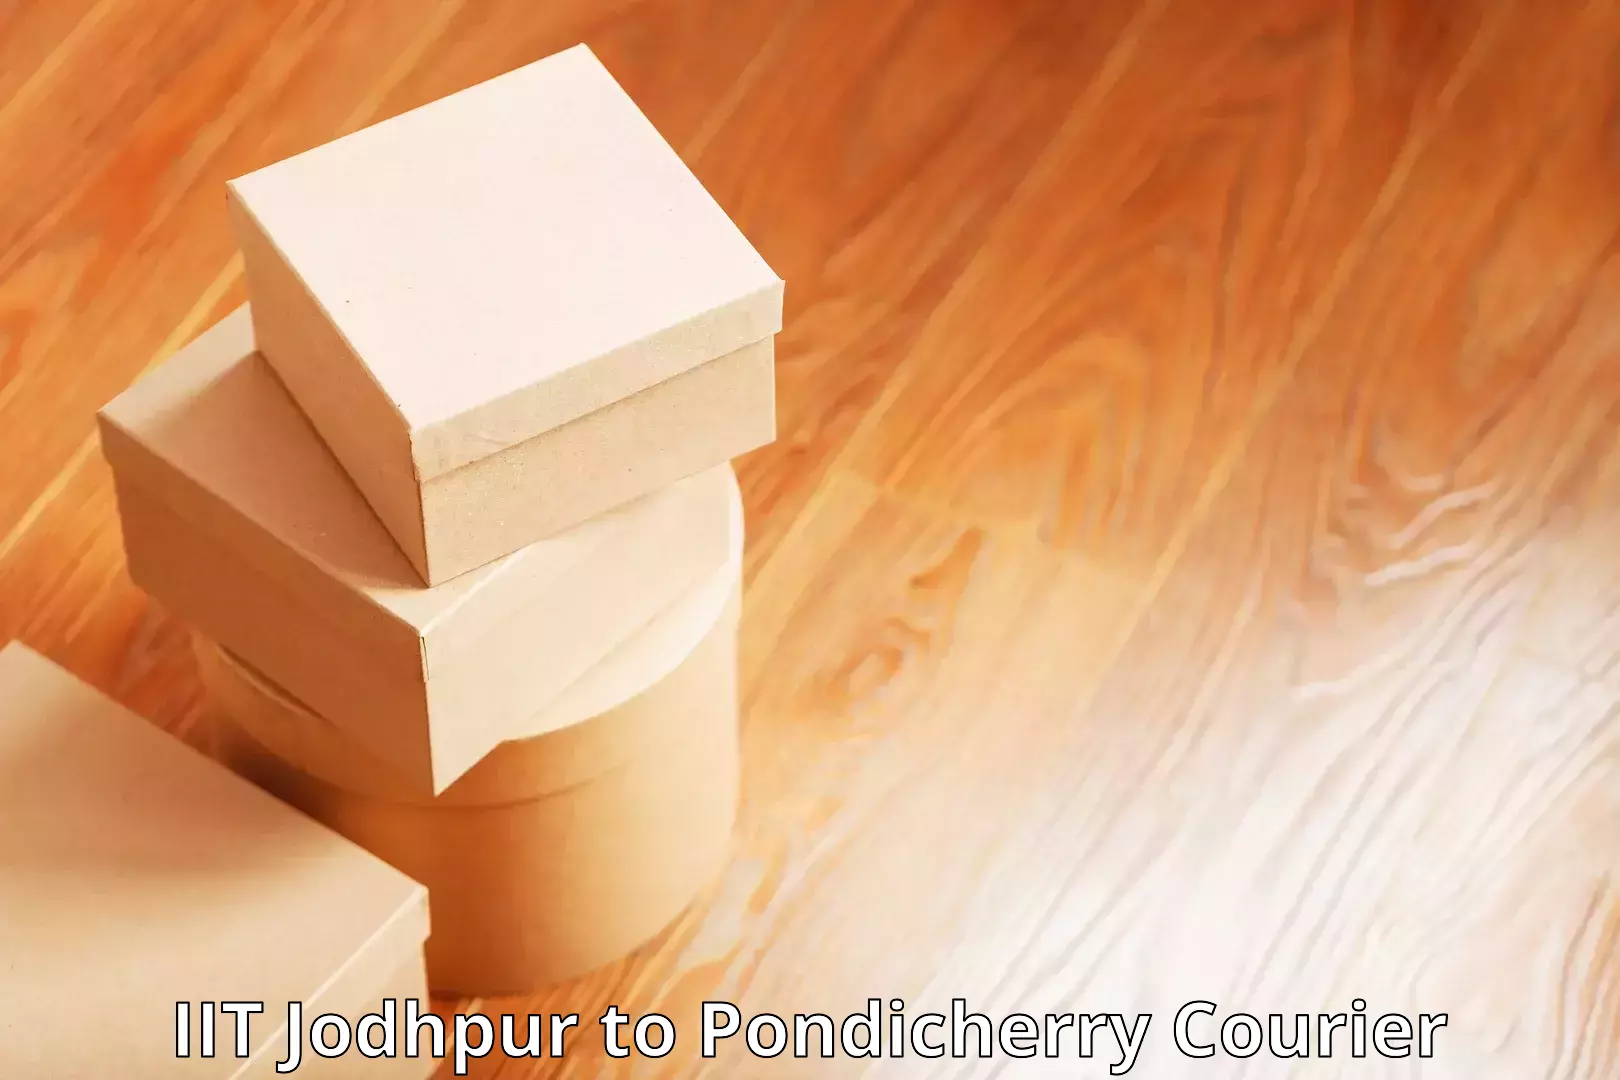 Courier services IIT Jodhpur to Pondicherry